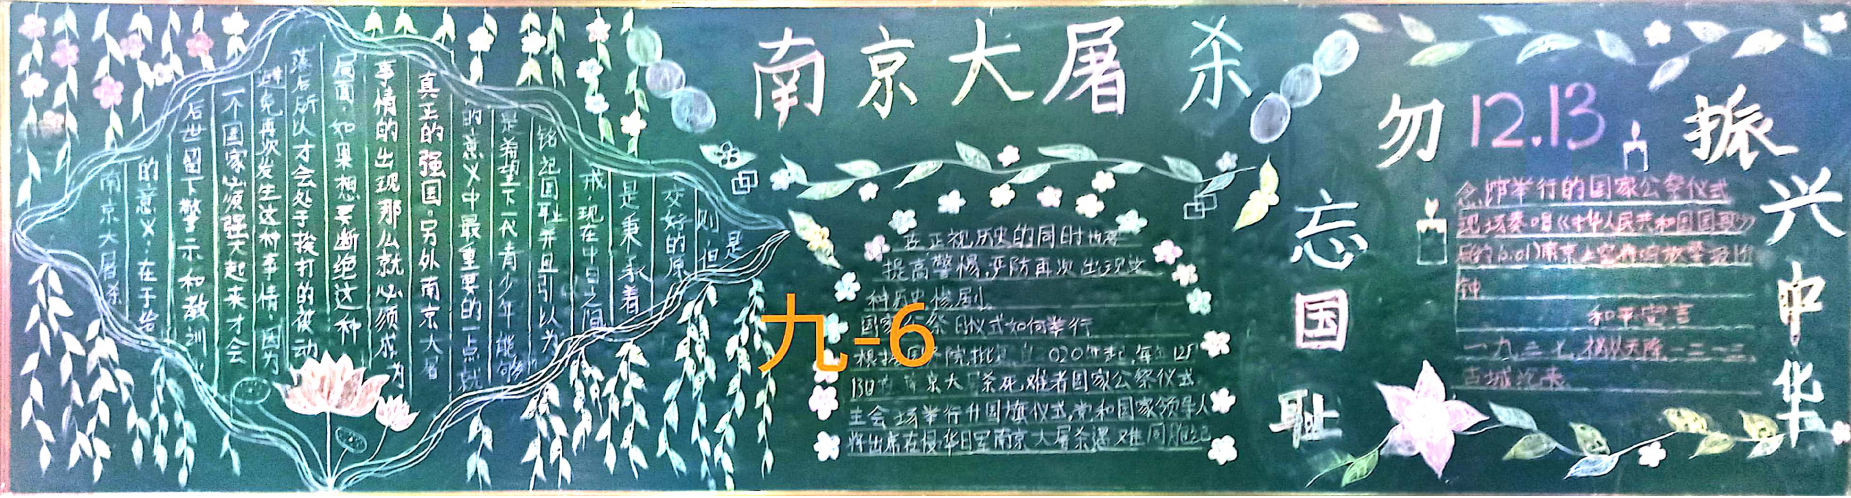 南京大屠杀九年级黑板报展示 写美篇       为进一步弘扬爱国主义精神